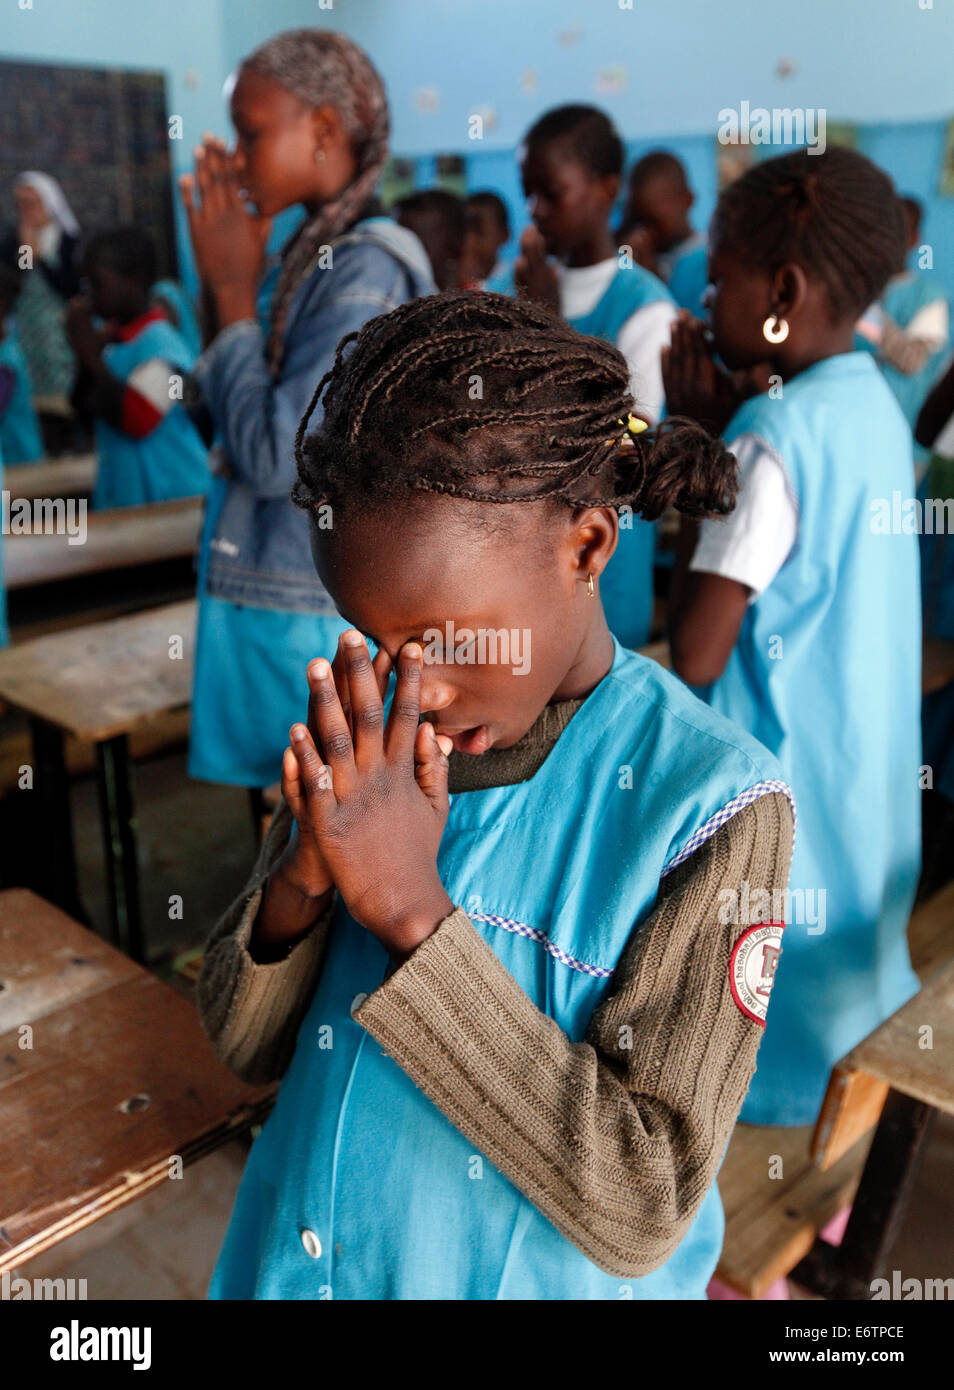 La catéchèse des enfants, des cours de religion dans l'école Catholique Notre Dame de Lourdes" à Saint Louis, Sénégal. Banque D'Images